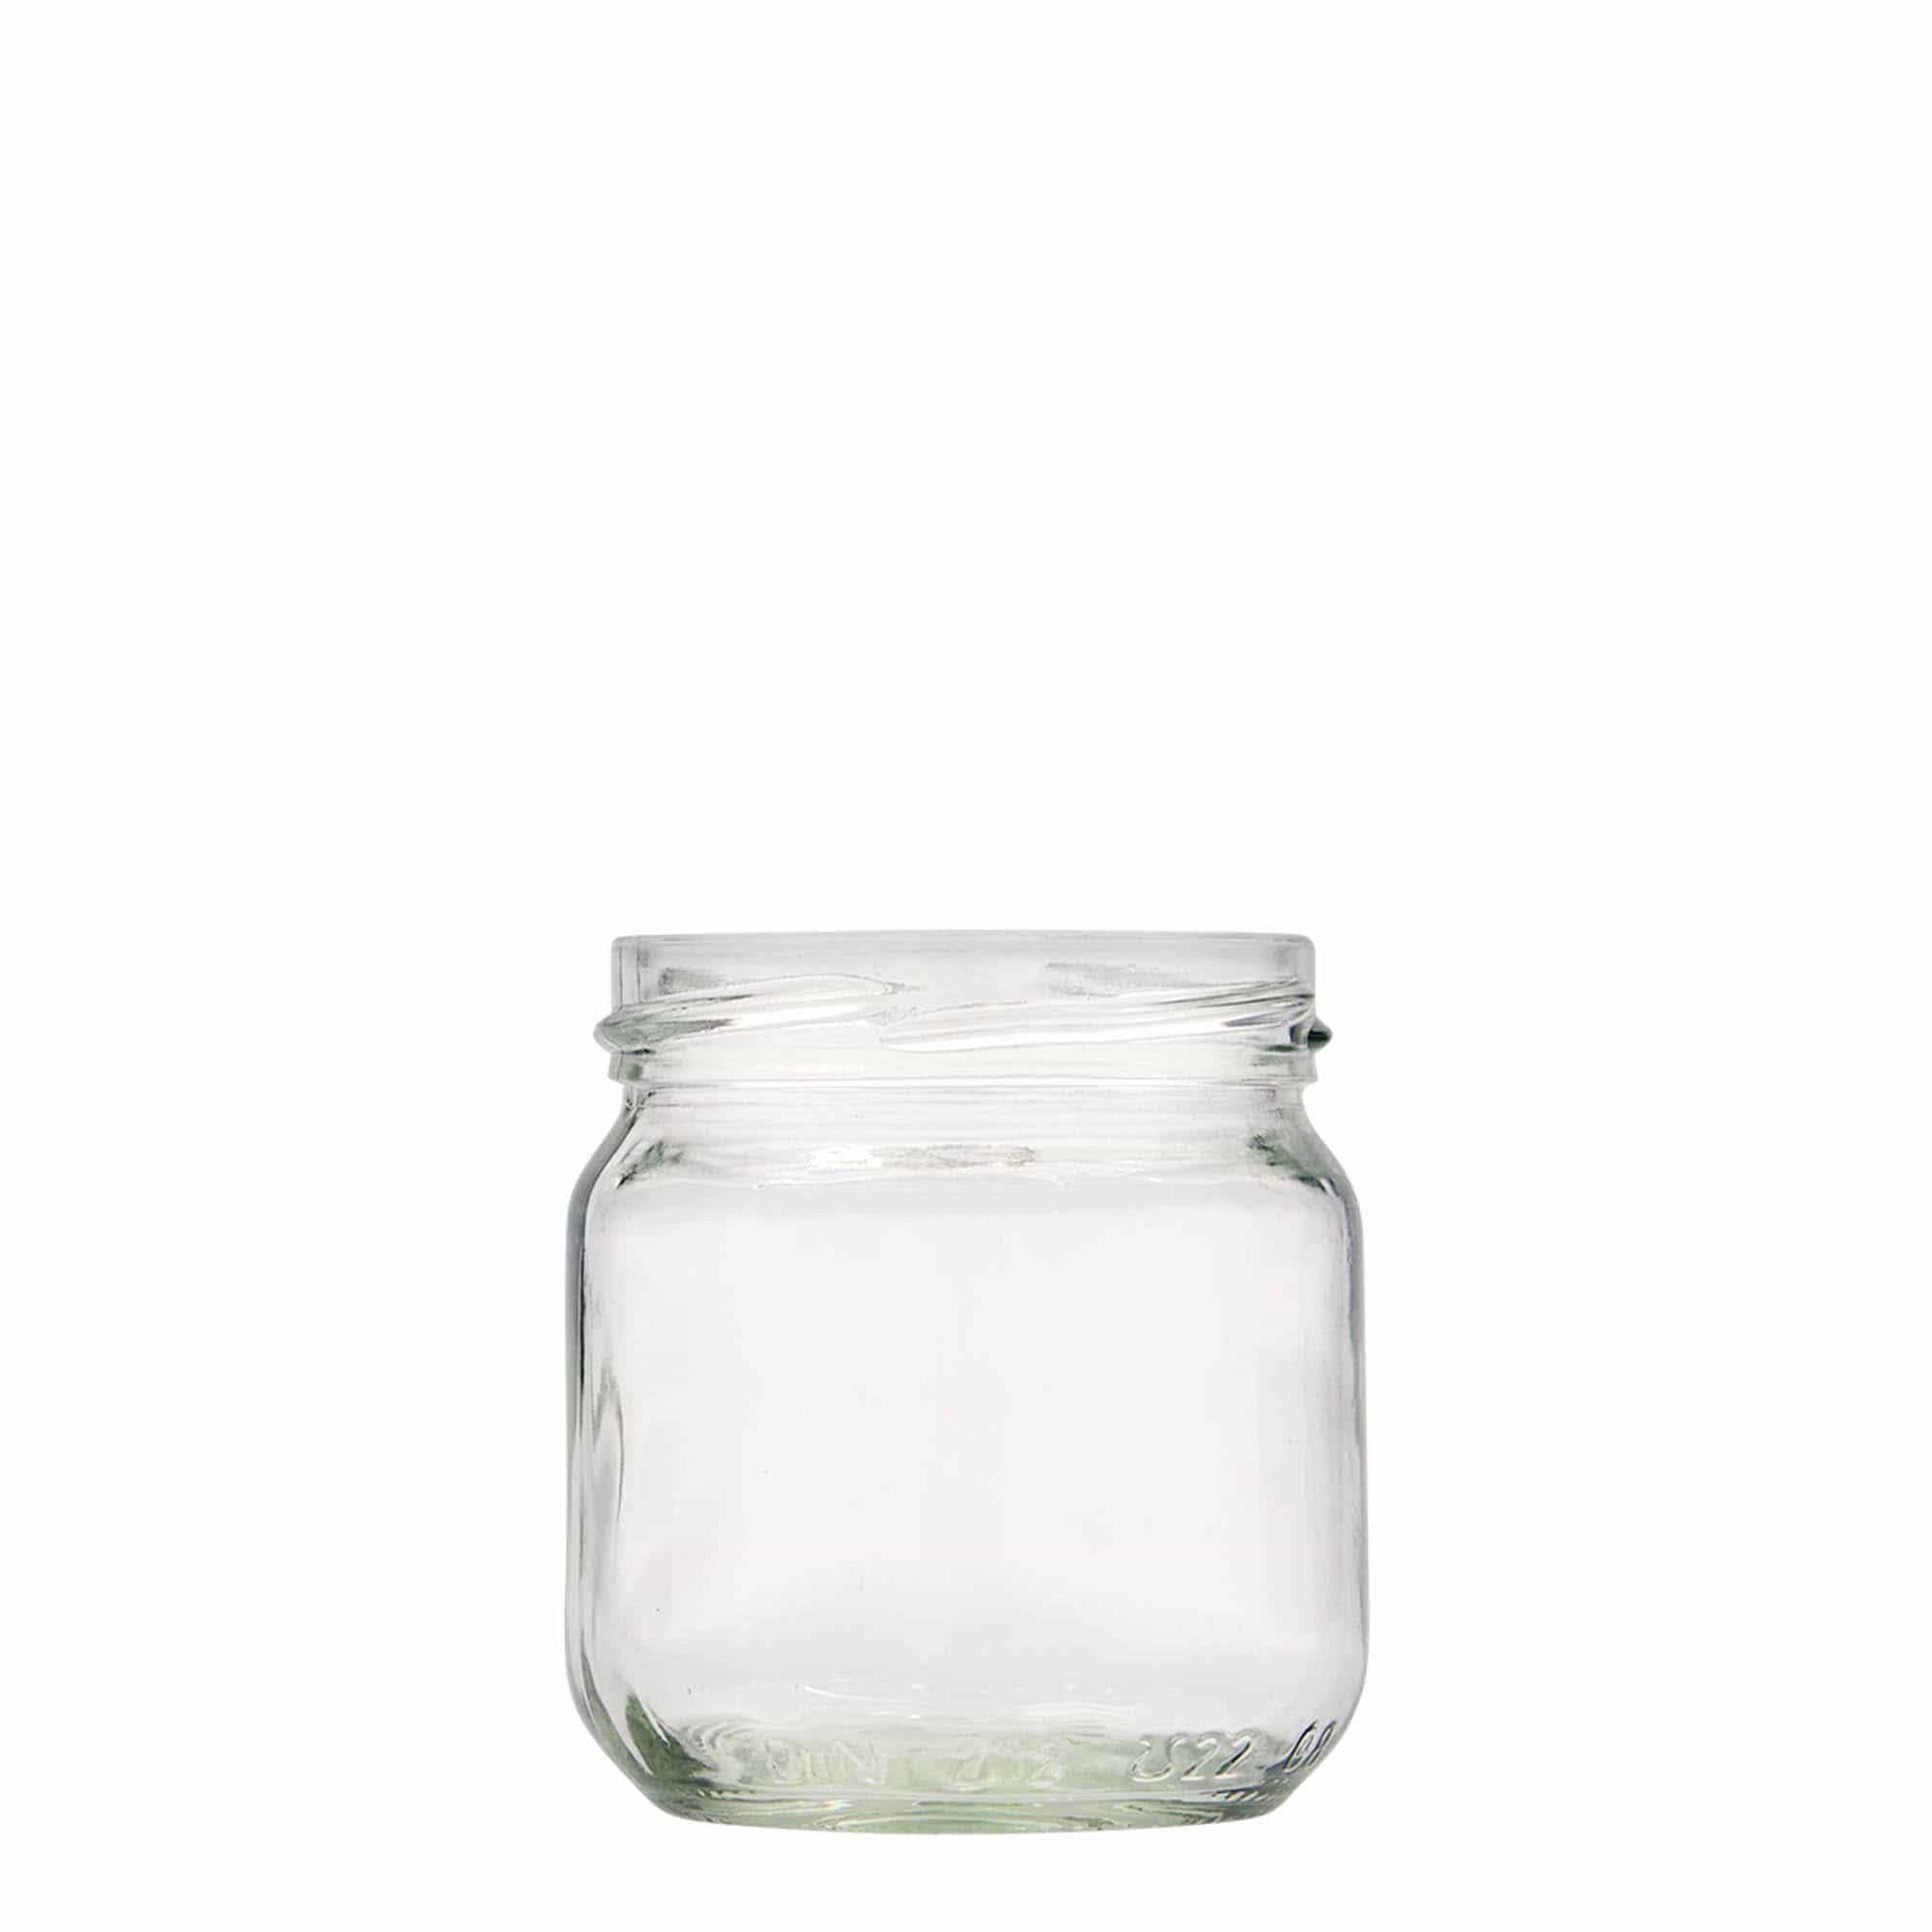 212 ml round jar, closure: twist off (TO 66)